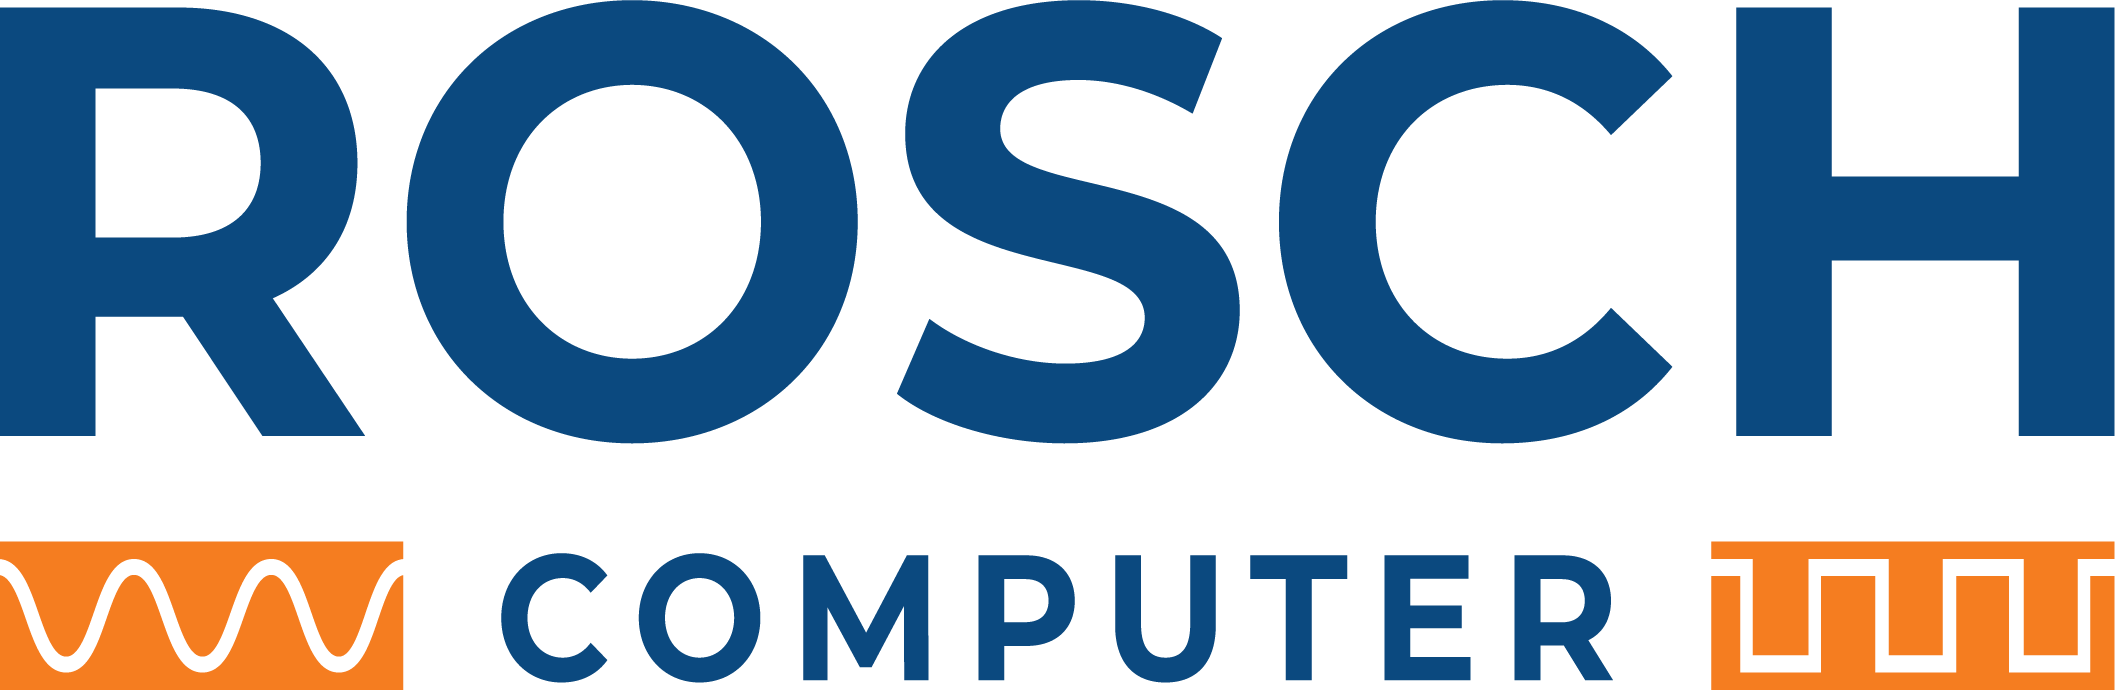 Rosch Computer